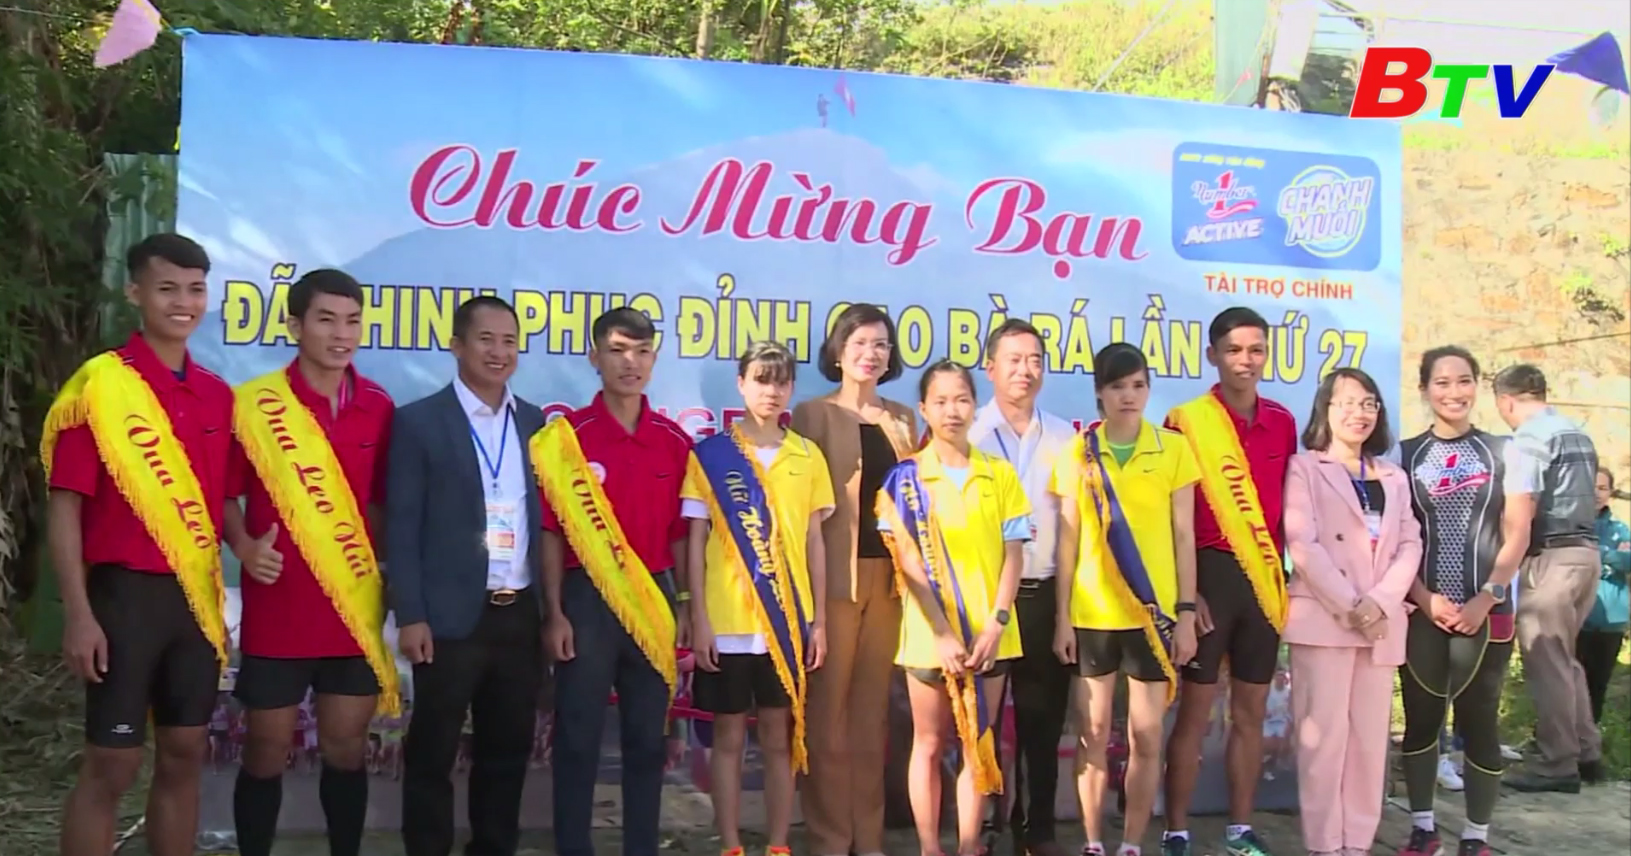 Vận động viên Hoàng Nguyên Thanh lần thứ 6 vô địch Giải Việt dã leo núi “Chinh phục đỉnh cao Bà Rá”